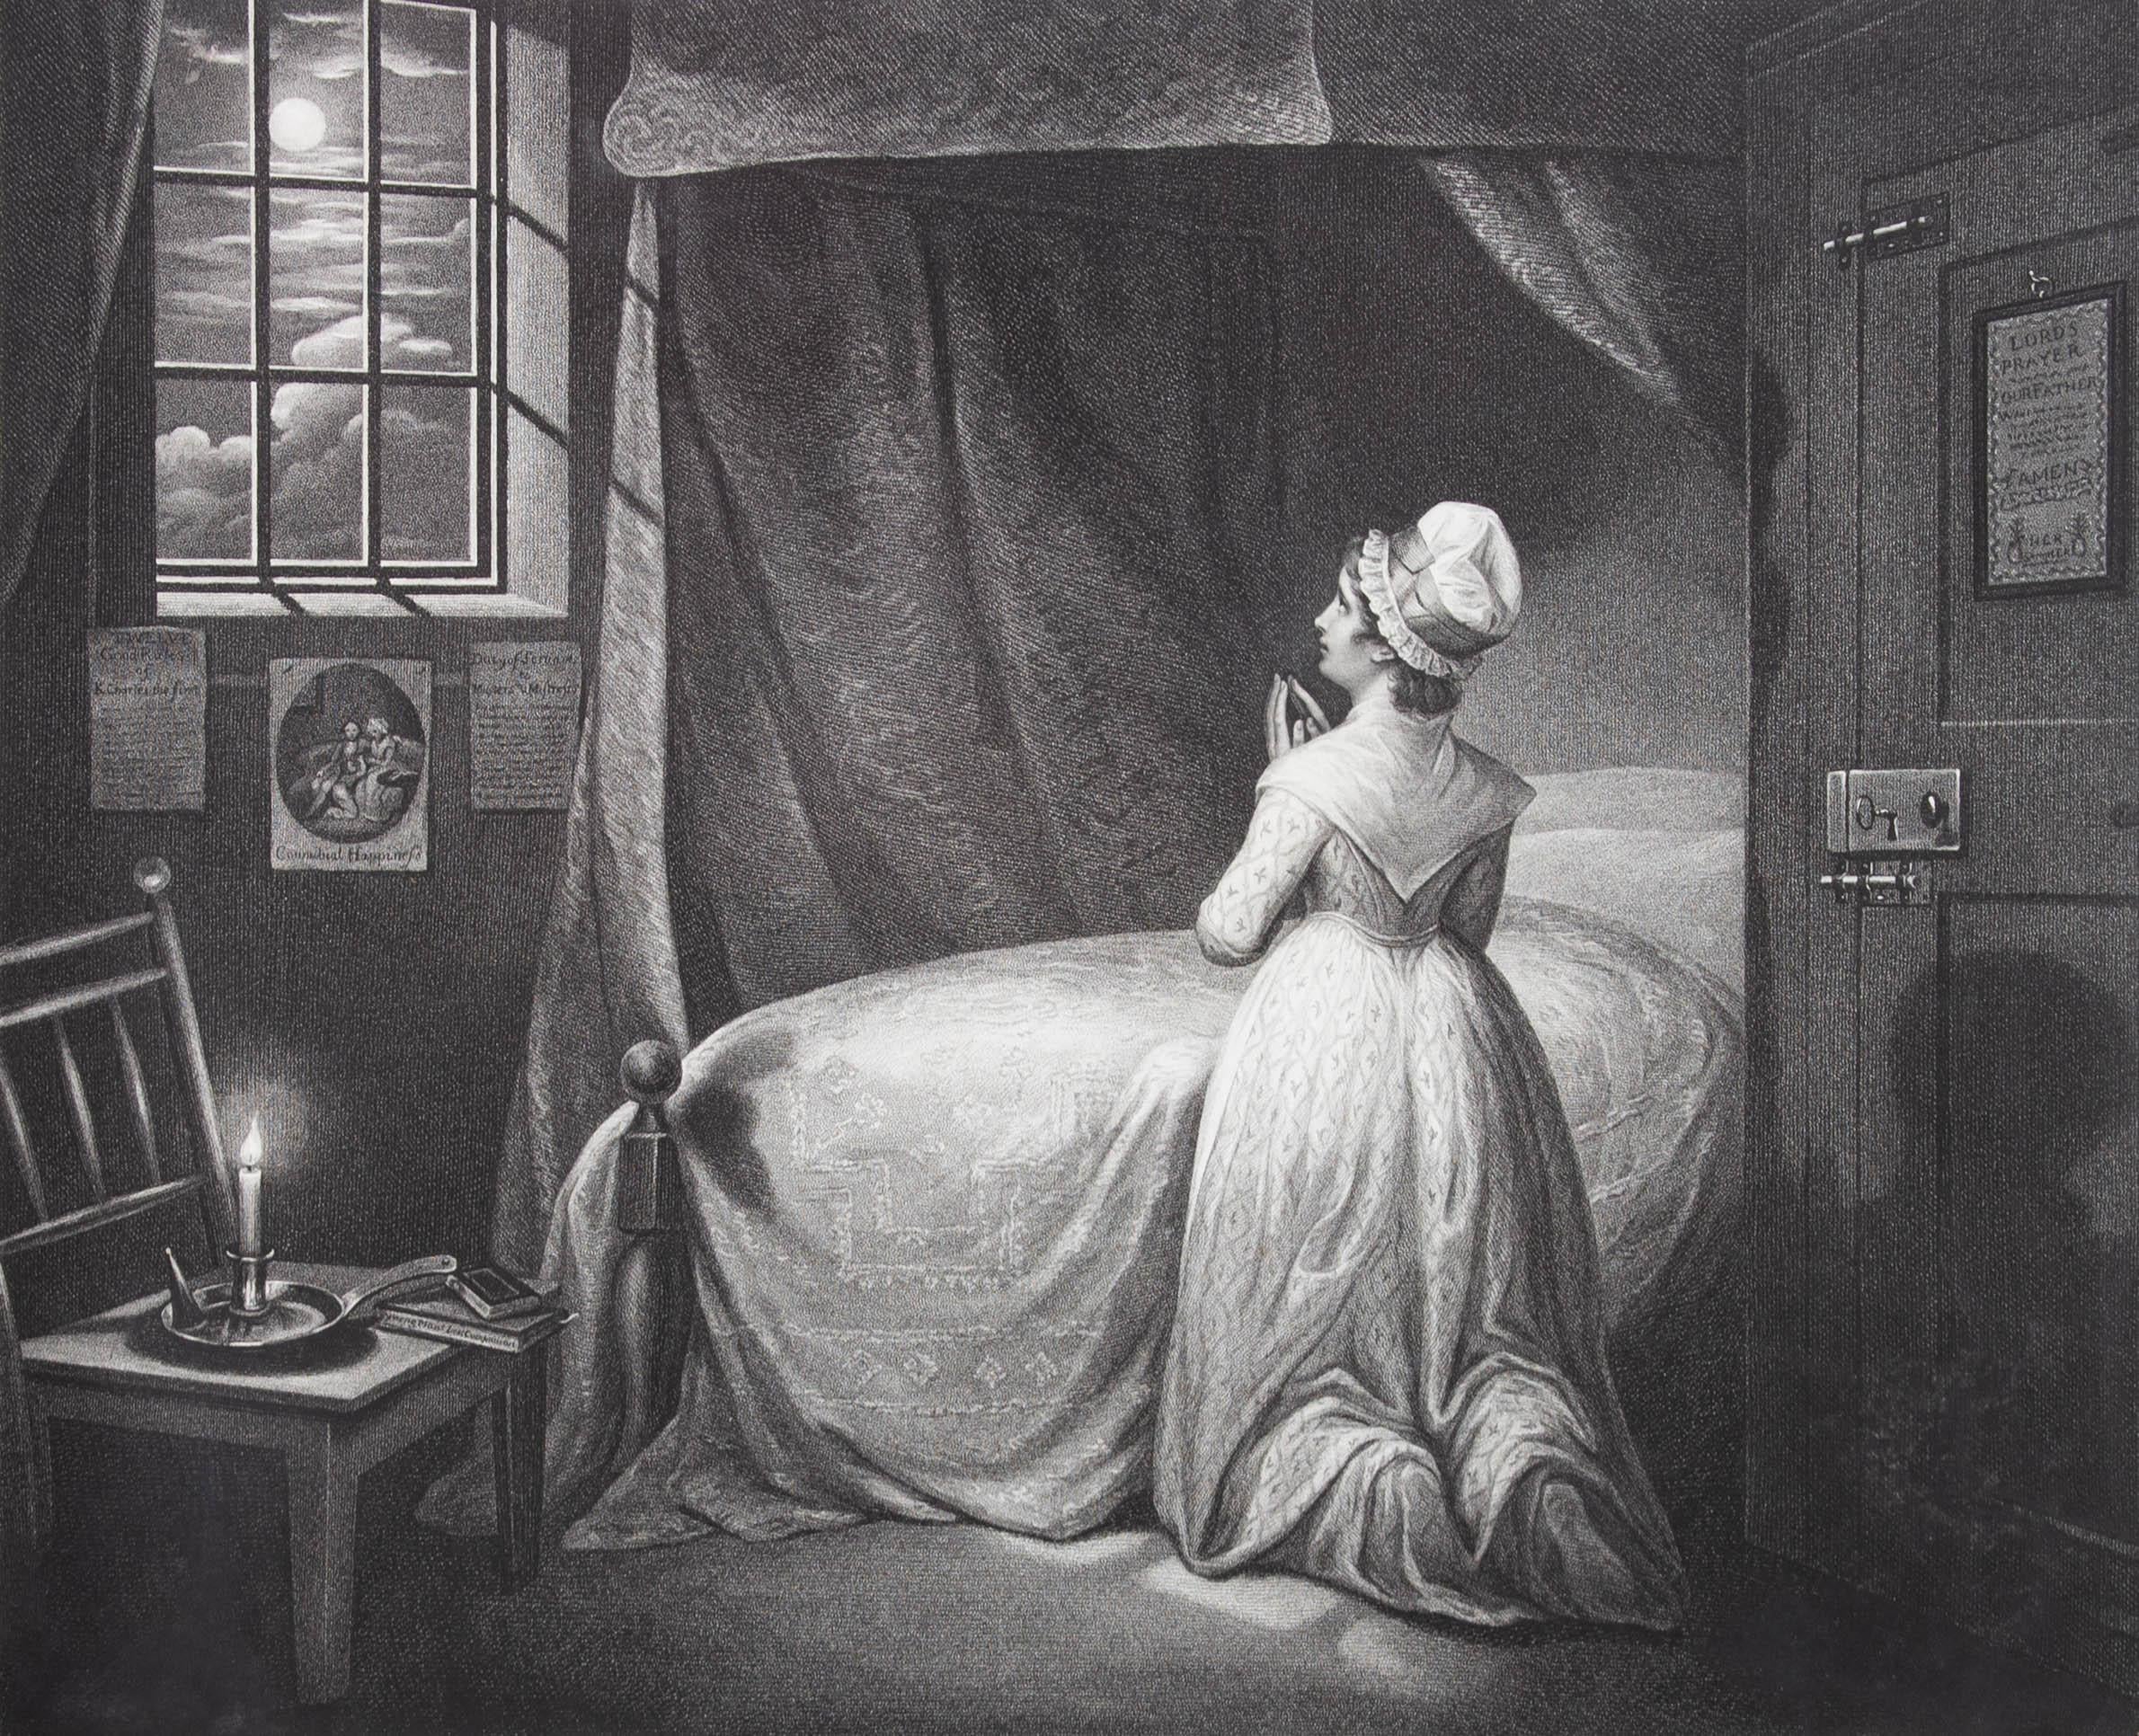 Ein schöner Kupferstich aus dem 18. Jahrhundert, der eine fromme junge Frau zeigt, die am Rande ihres Bettes kniet und betet. Die Szene stammt aus einer Serie von Stichen, die veröffentlicht wurden, um die Unterschiede zwischen dem Leben von